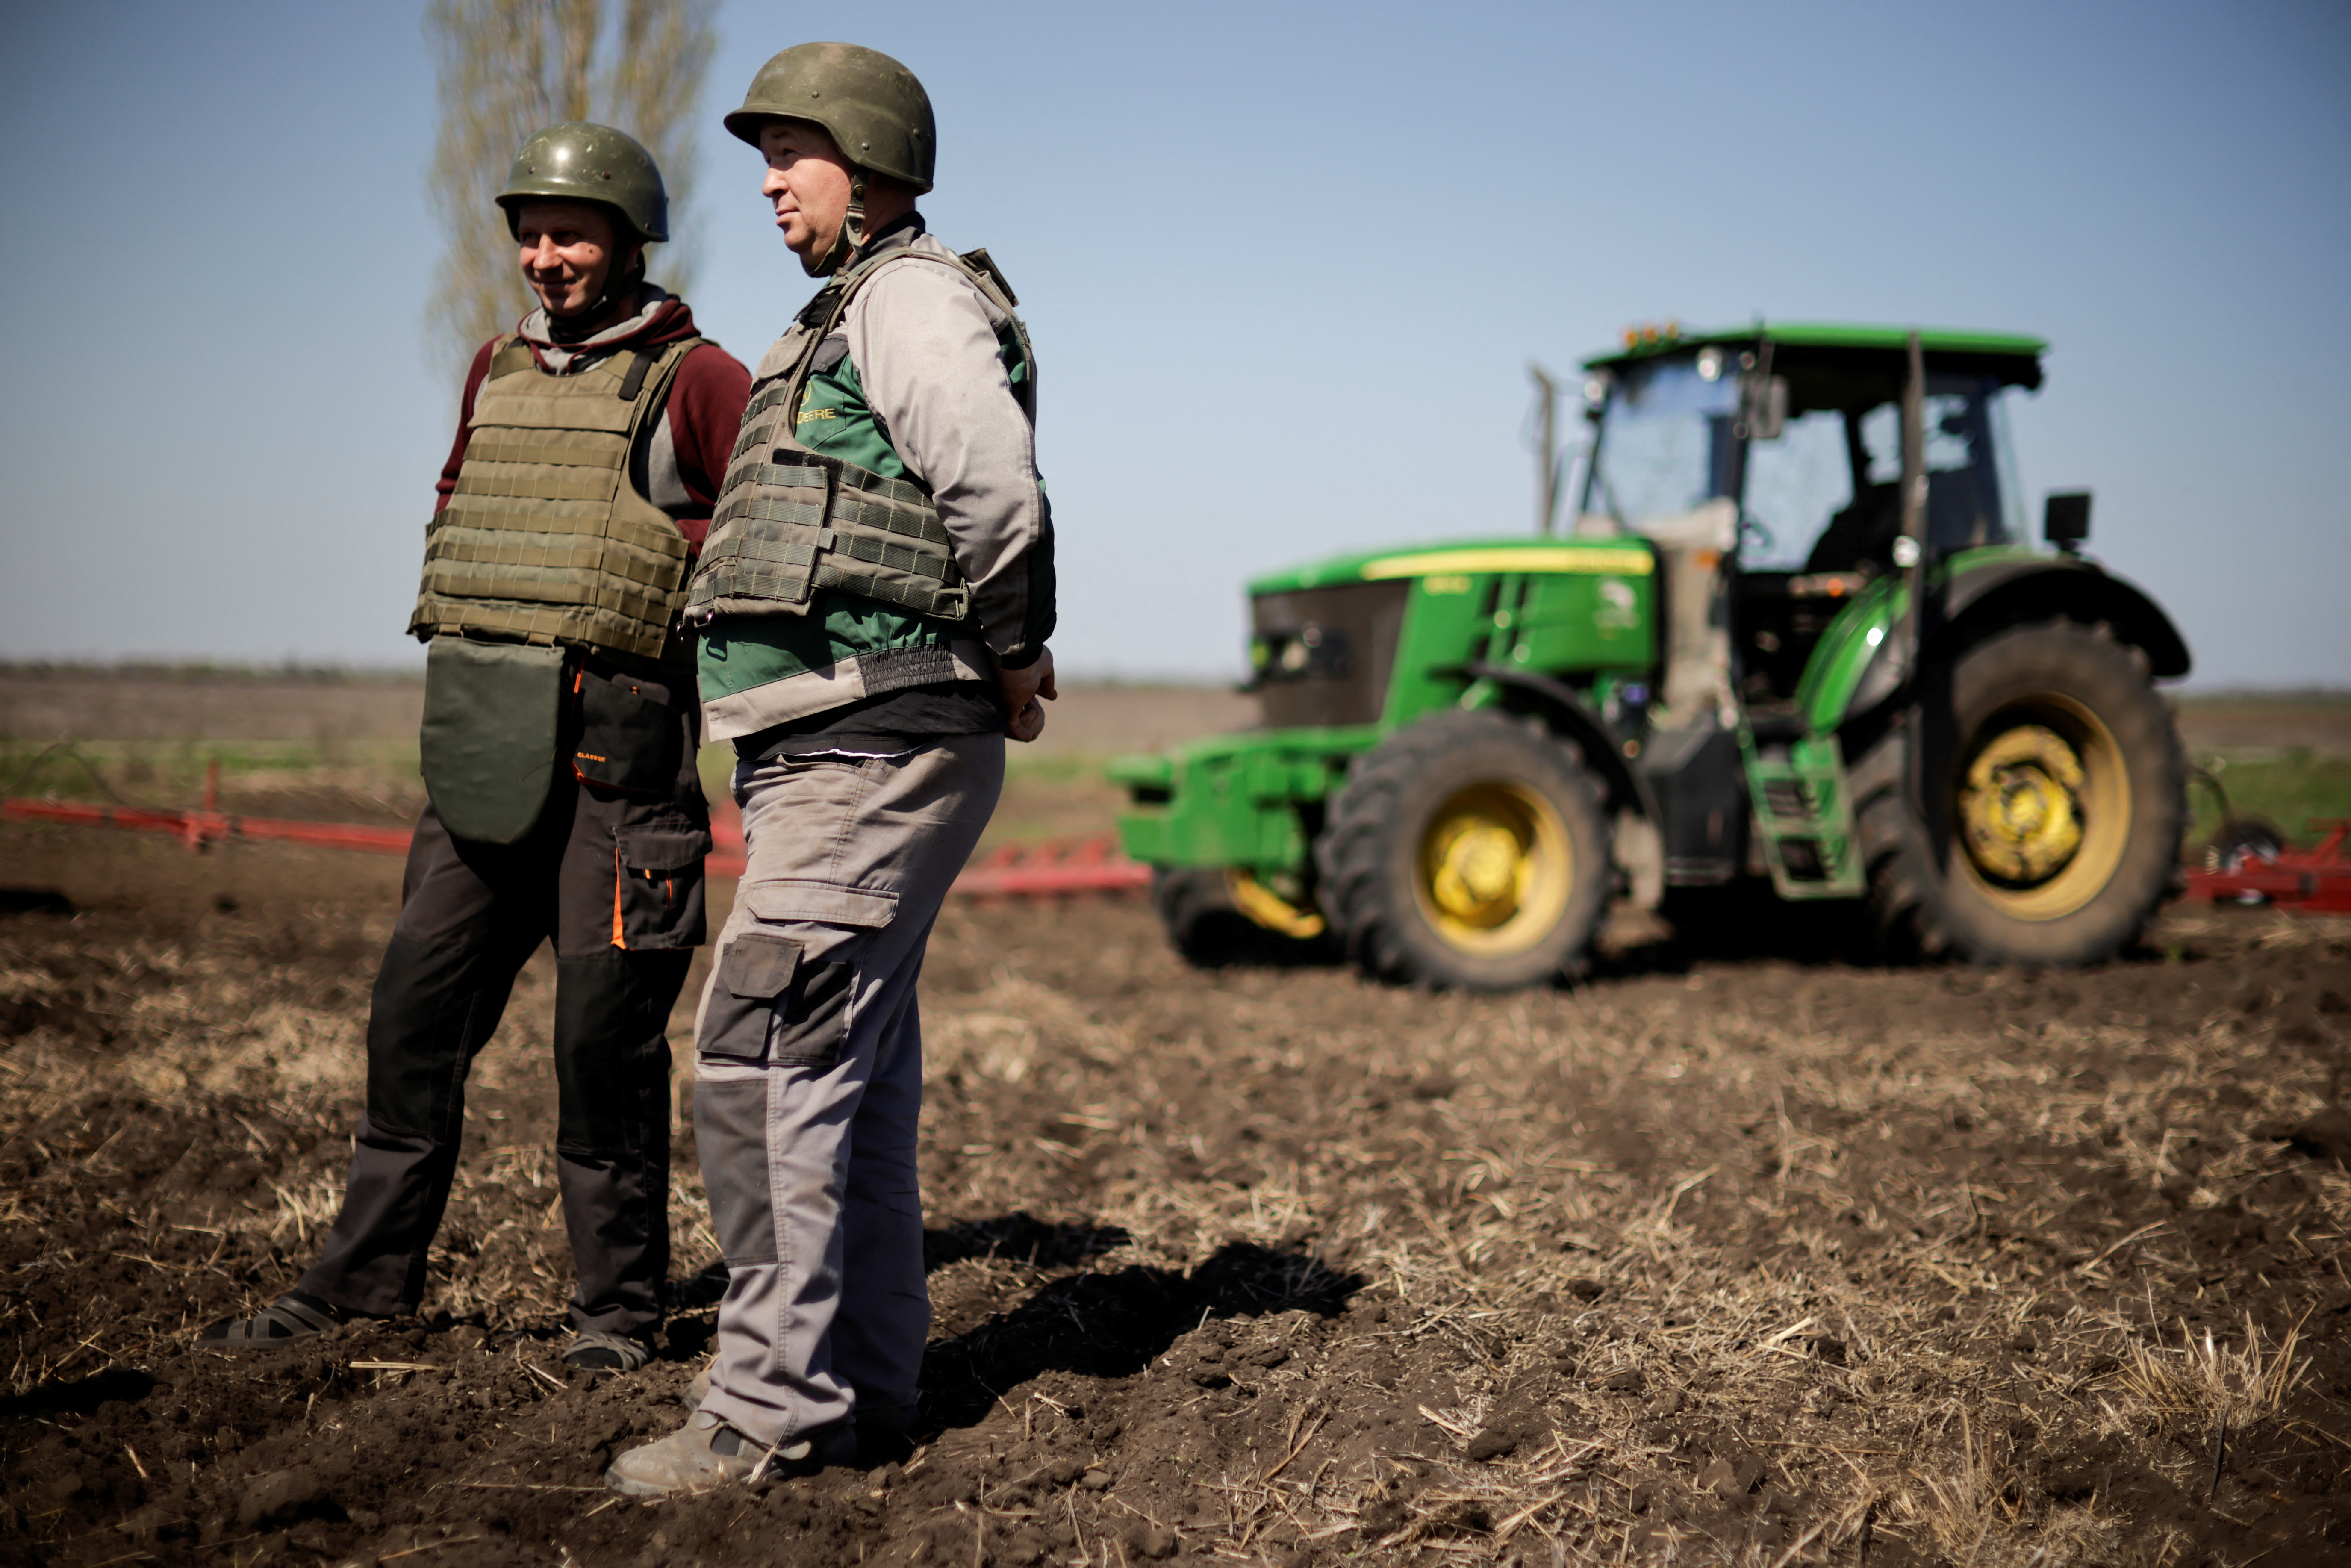 Yuri y Oleksiy, agricultores ucranianos que usan chalecos antibalas y cascos, trabajan en la capa superior del suelo en un campo, en medio de la invasión rusa de Ucrania, en la región de Zaporizhzhia, Ucrania, 26 de abril de 2022. REUTERS/Ueslei Marcelino
